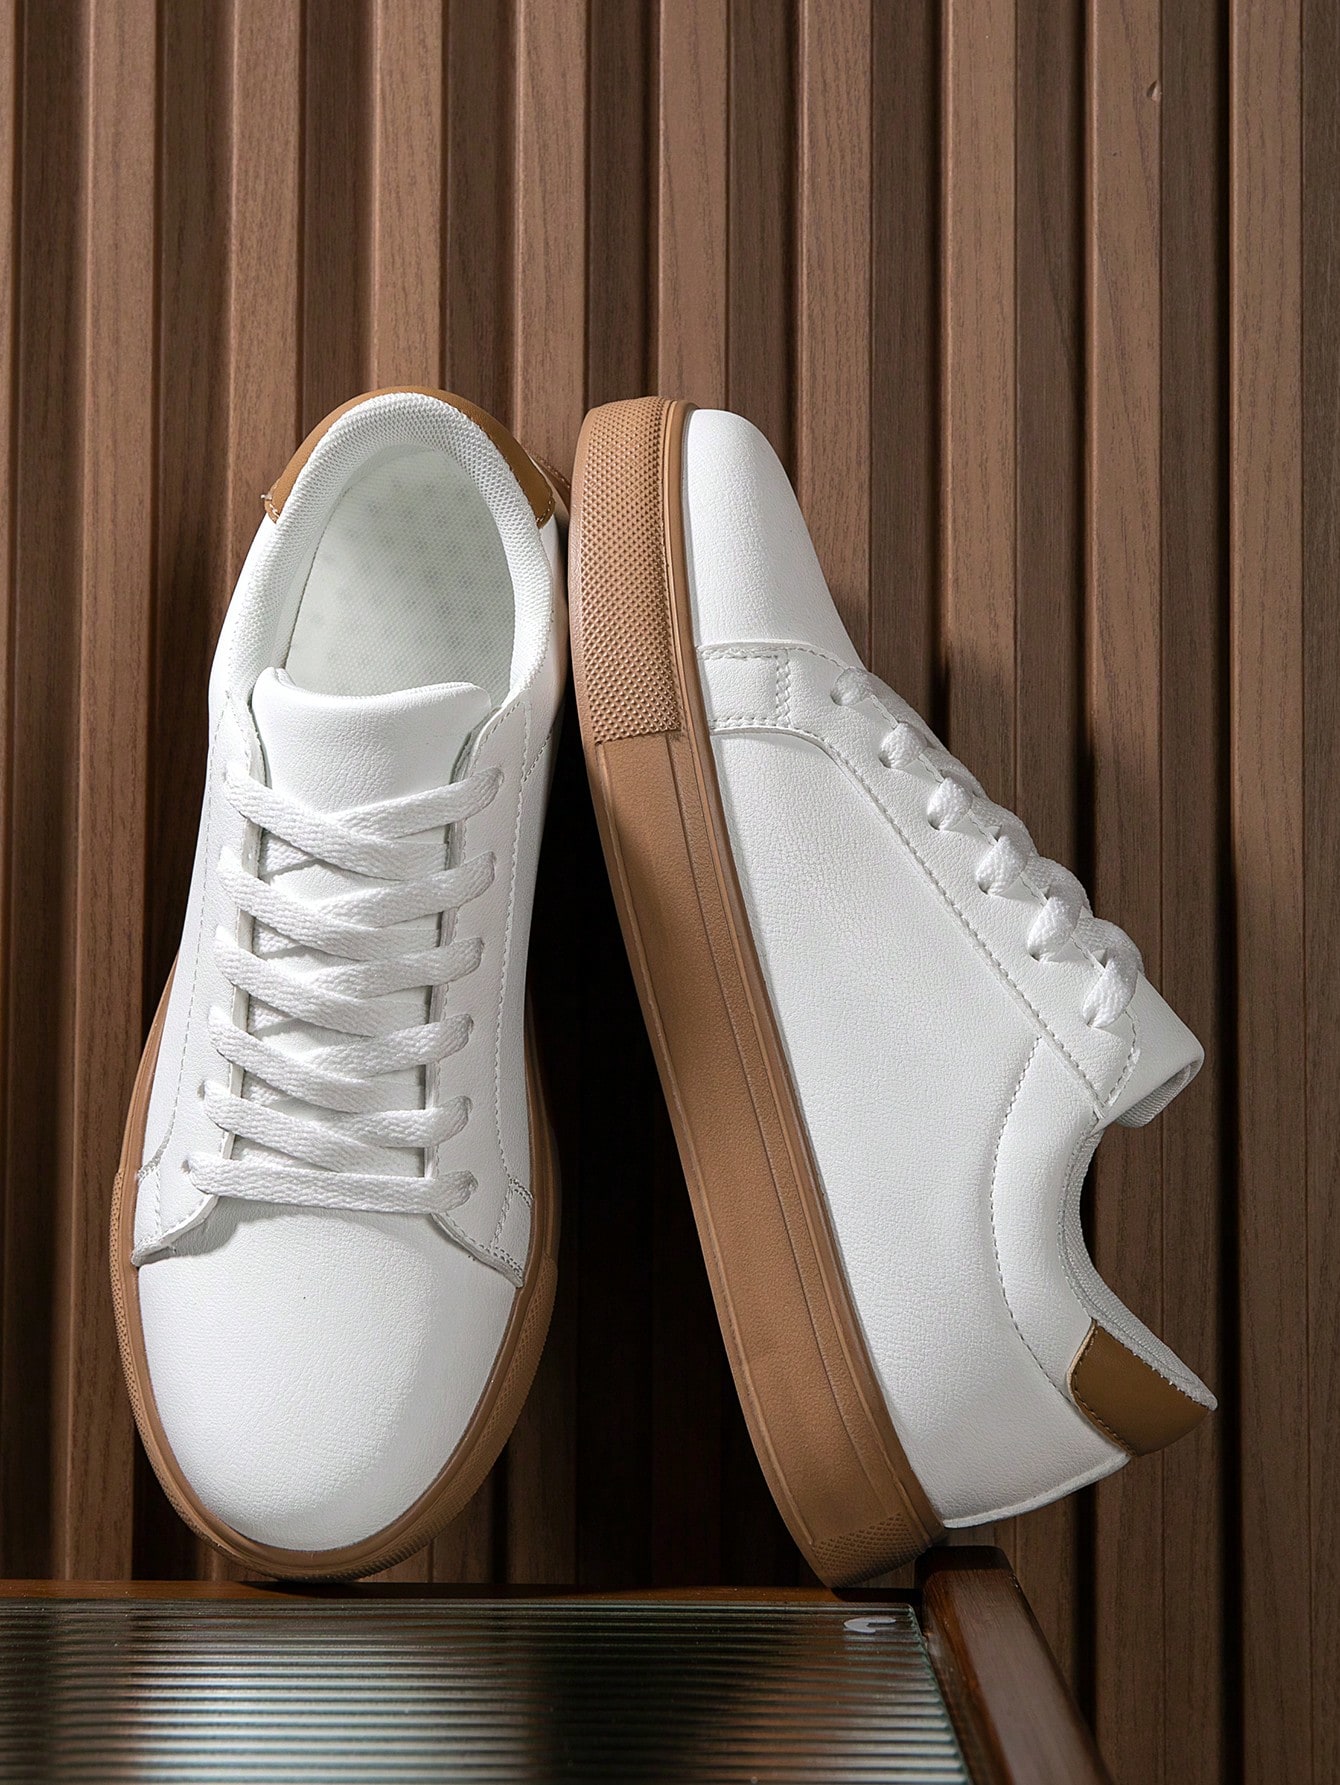 Мужская спортивная обувь для скейтбординга в минималистском стиле с передним ремешком, коричневый кроссовки мужские холщовые дышащие низкие кеды модная универсальная спортивная обувь плоская подошва белые в ретро стиле